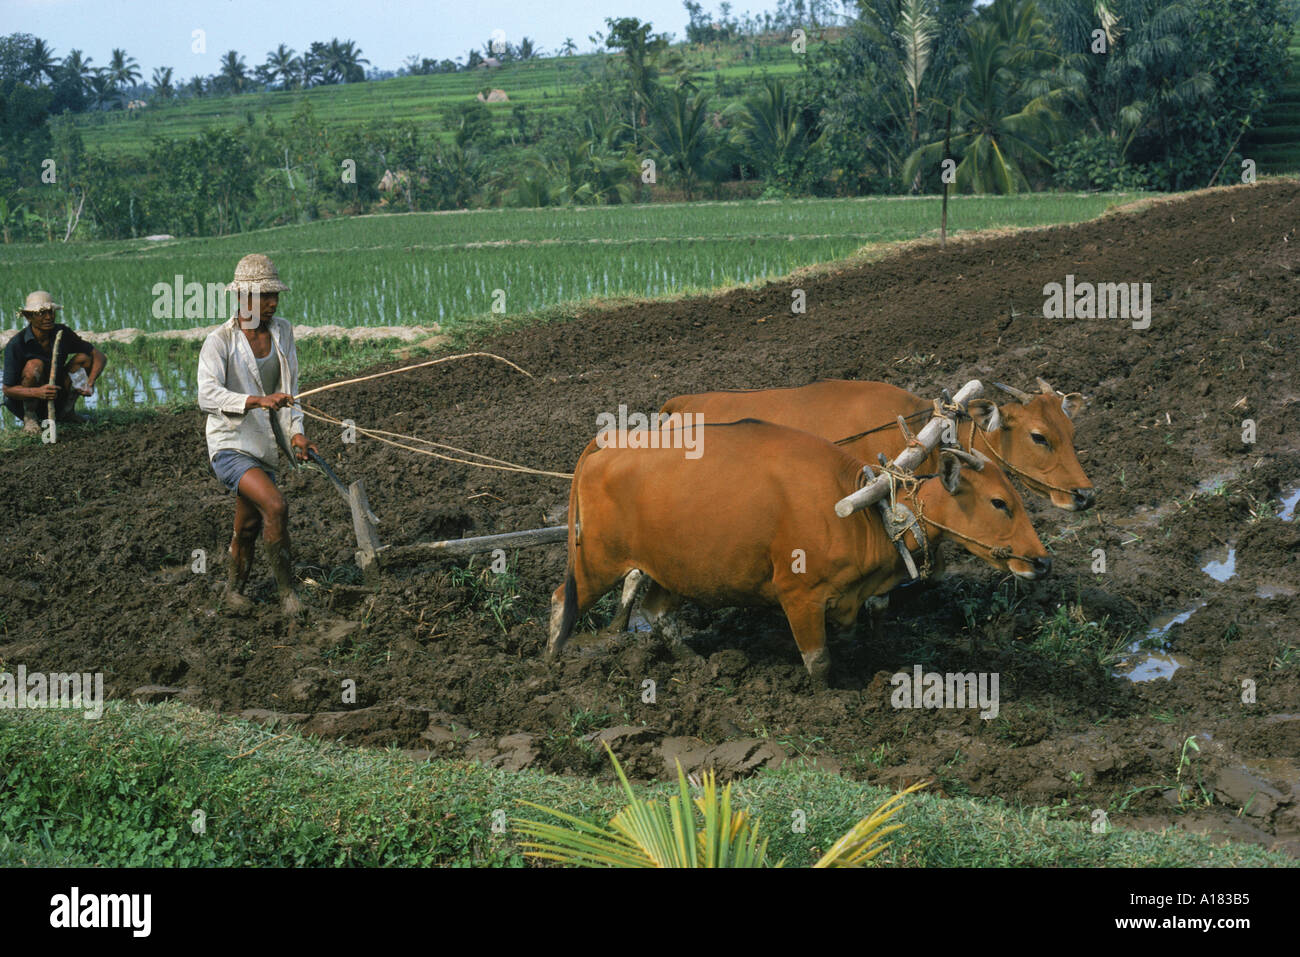 Homme labourant un champ avec deux taureaux en Bali Indonésie Asie S Sassoon Banque D'Images